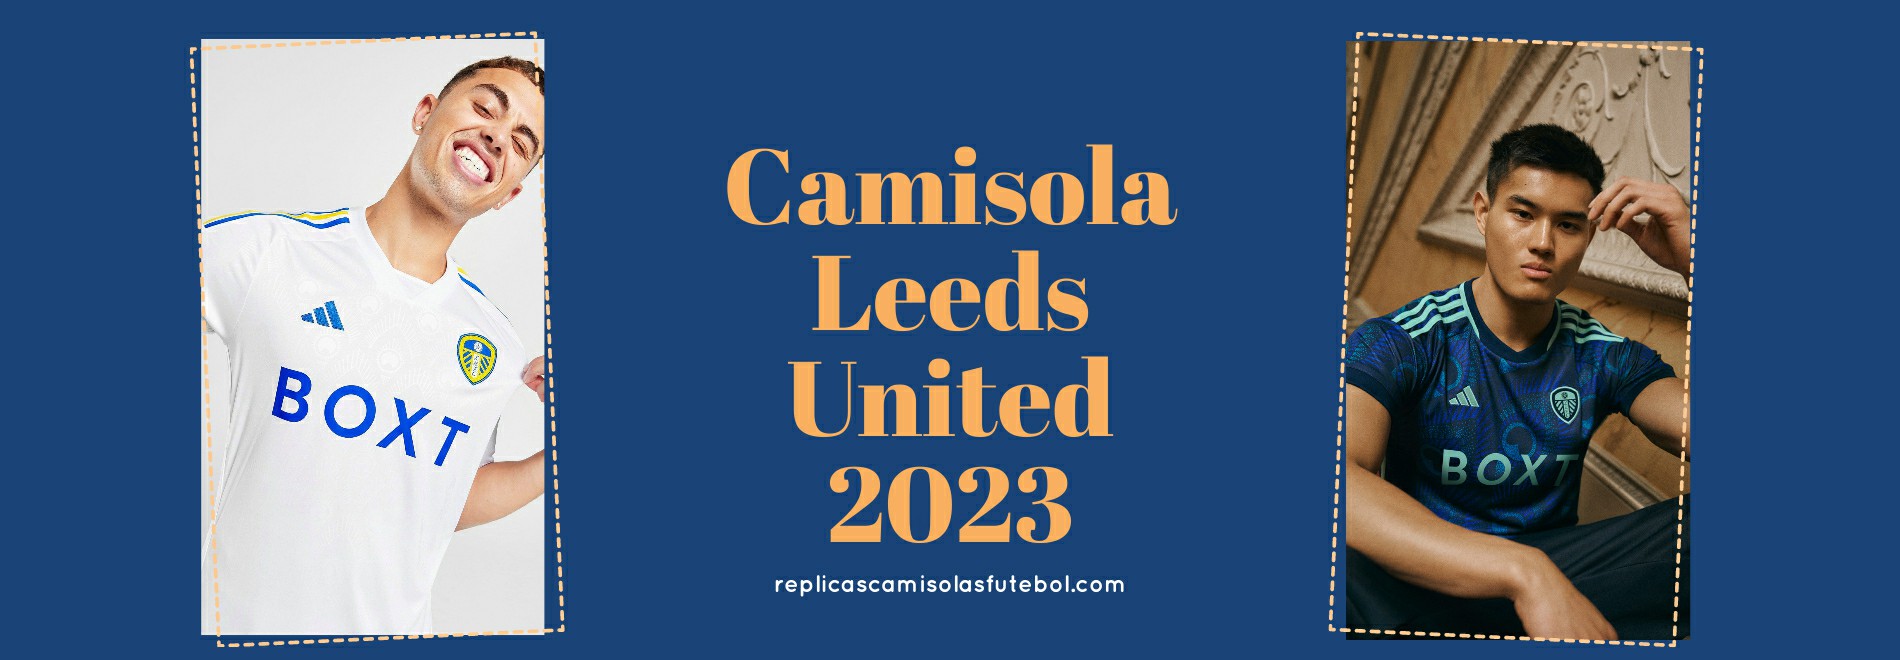 Camisola Leeds United 2023-2024